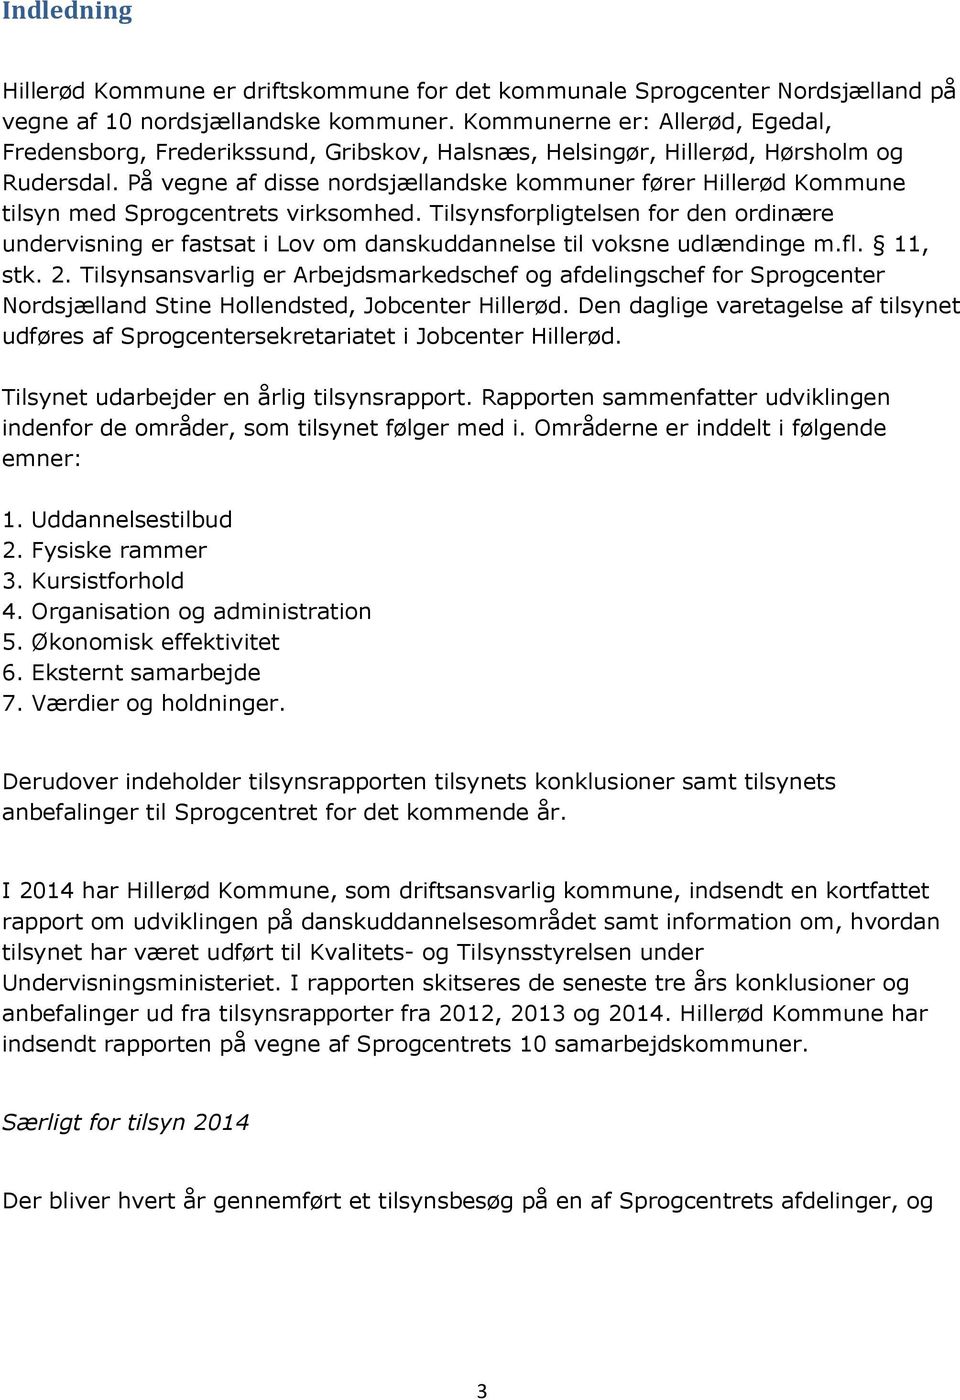 På vegne af disse nordsjællandske kommuner fører Hillerød Kommune tilsyn med Sprogcentrets virksomhed.